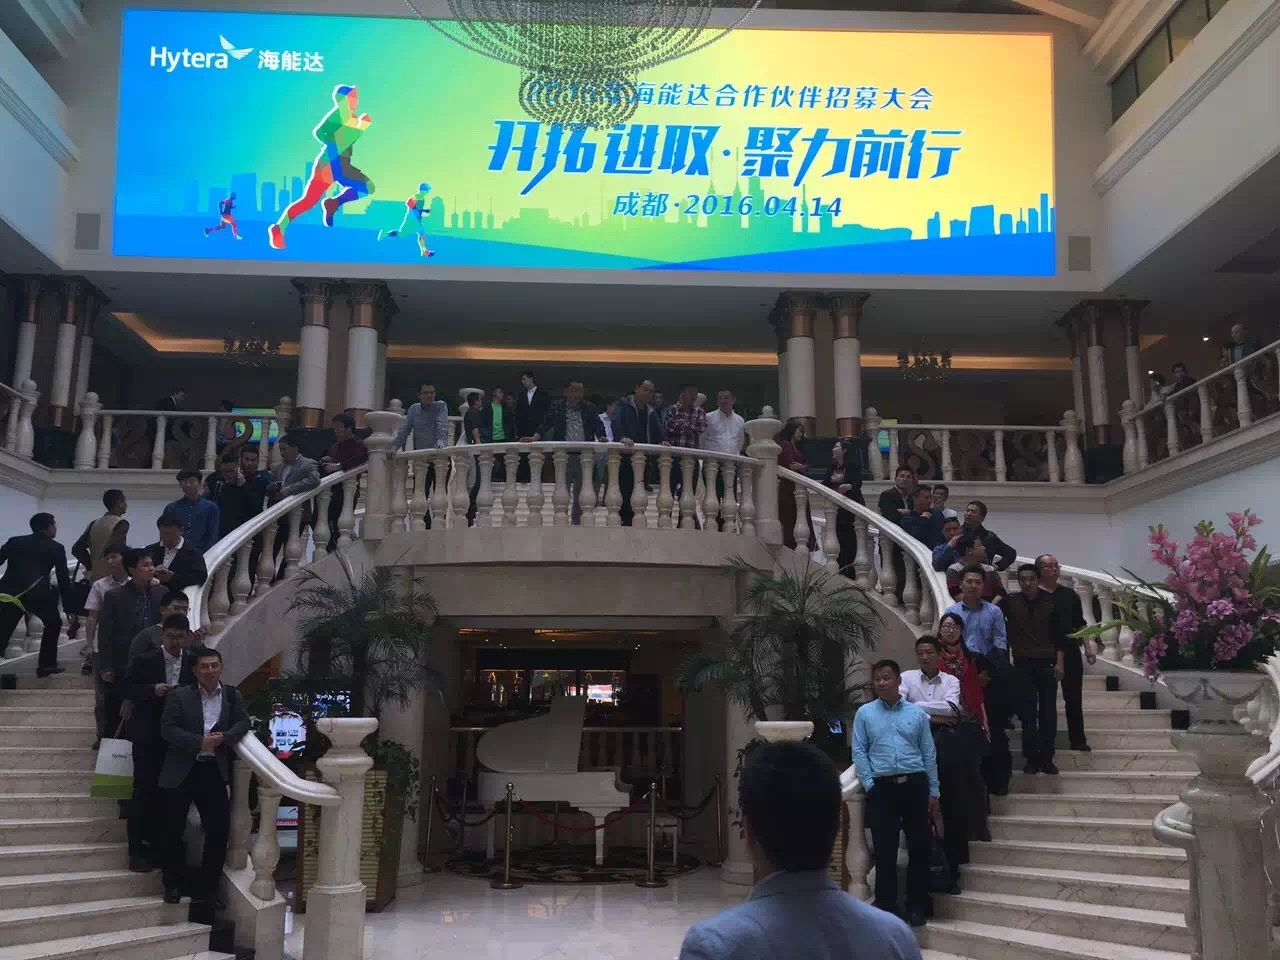 上海曙腾针对全国举办6场区域销售会议拓展海能达产品国代业务